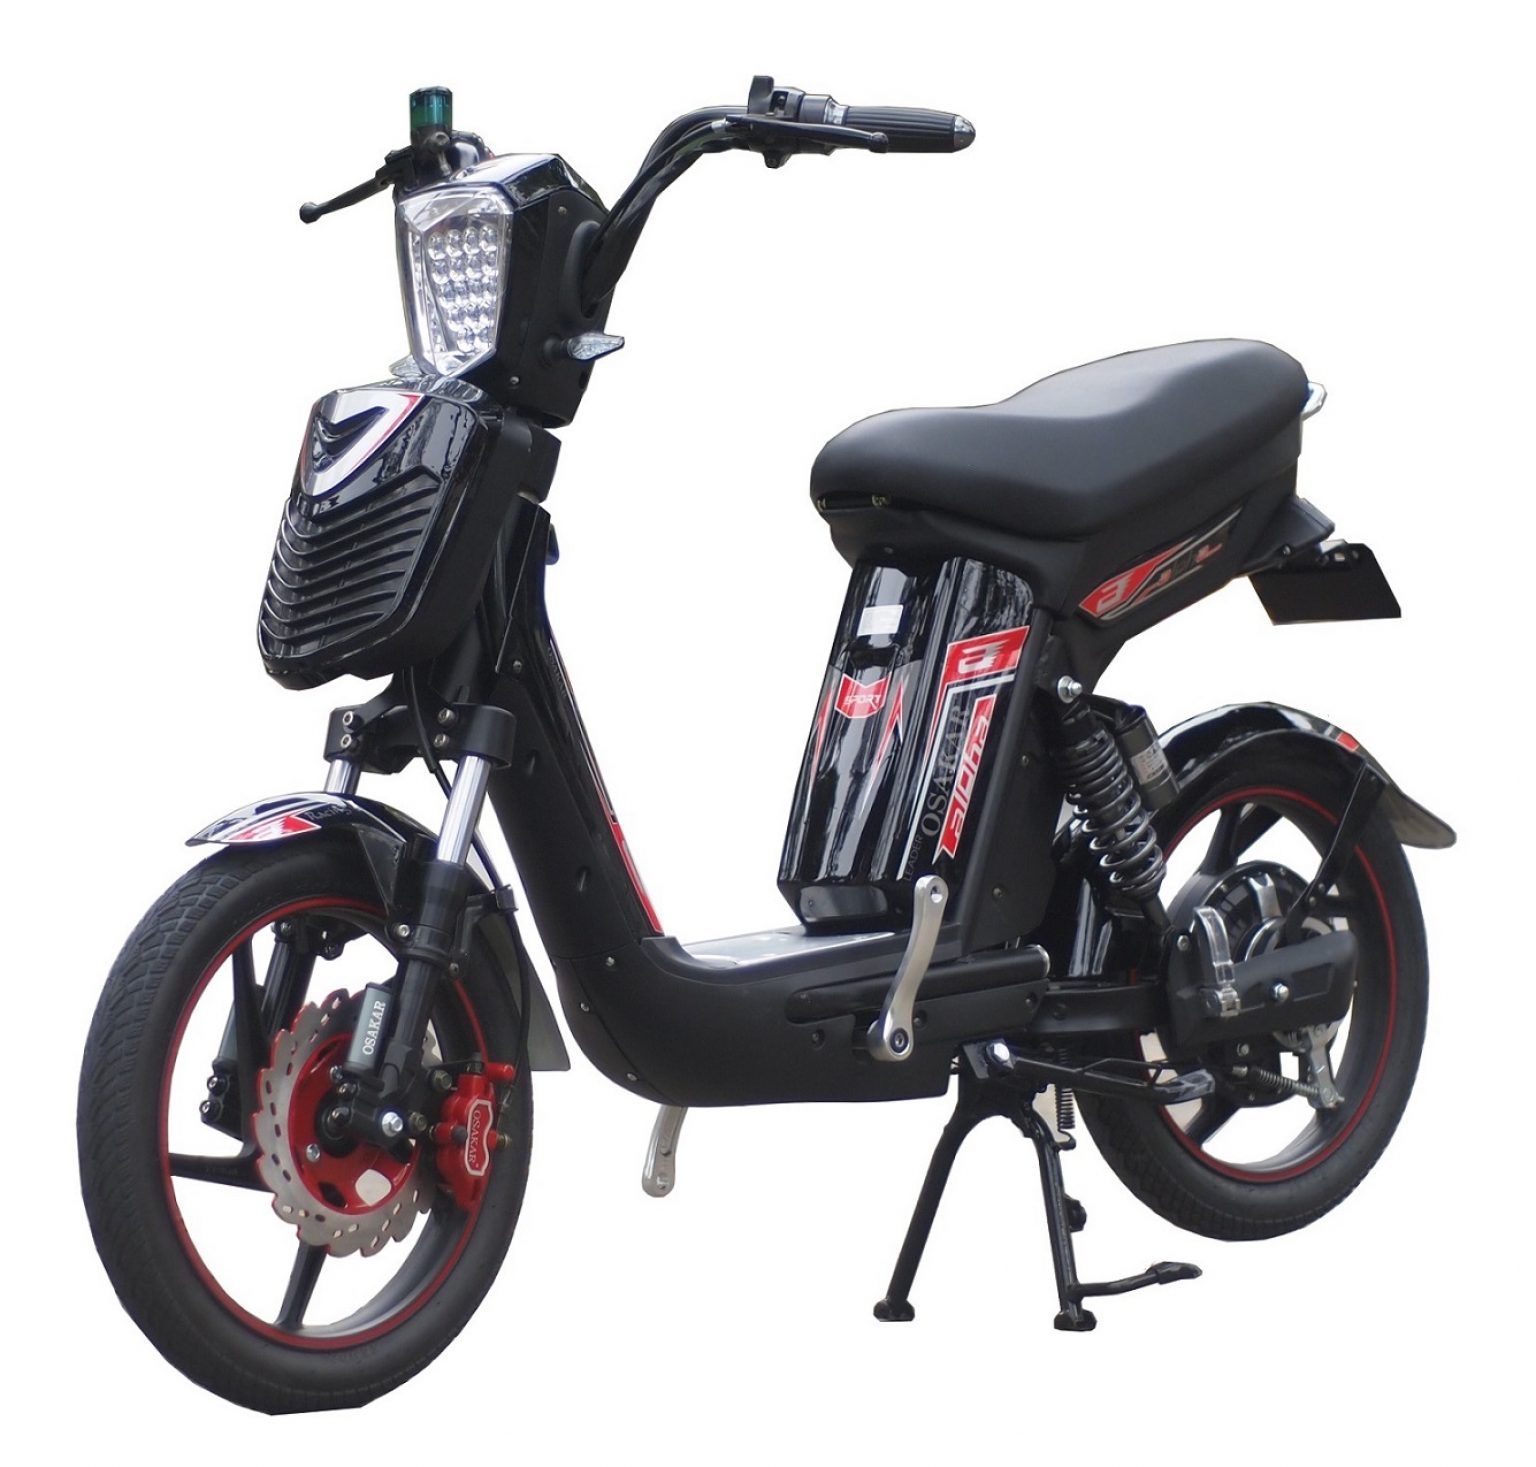 Top các cửa hàng bán xe đạp điện uy tín nhất tại Hải Phòng - Megabus.vn ...